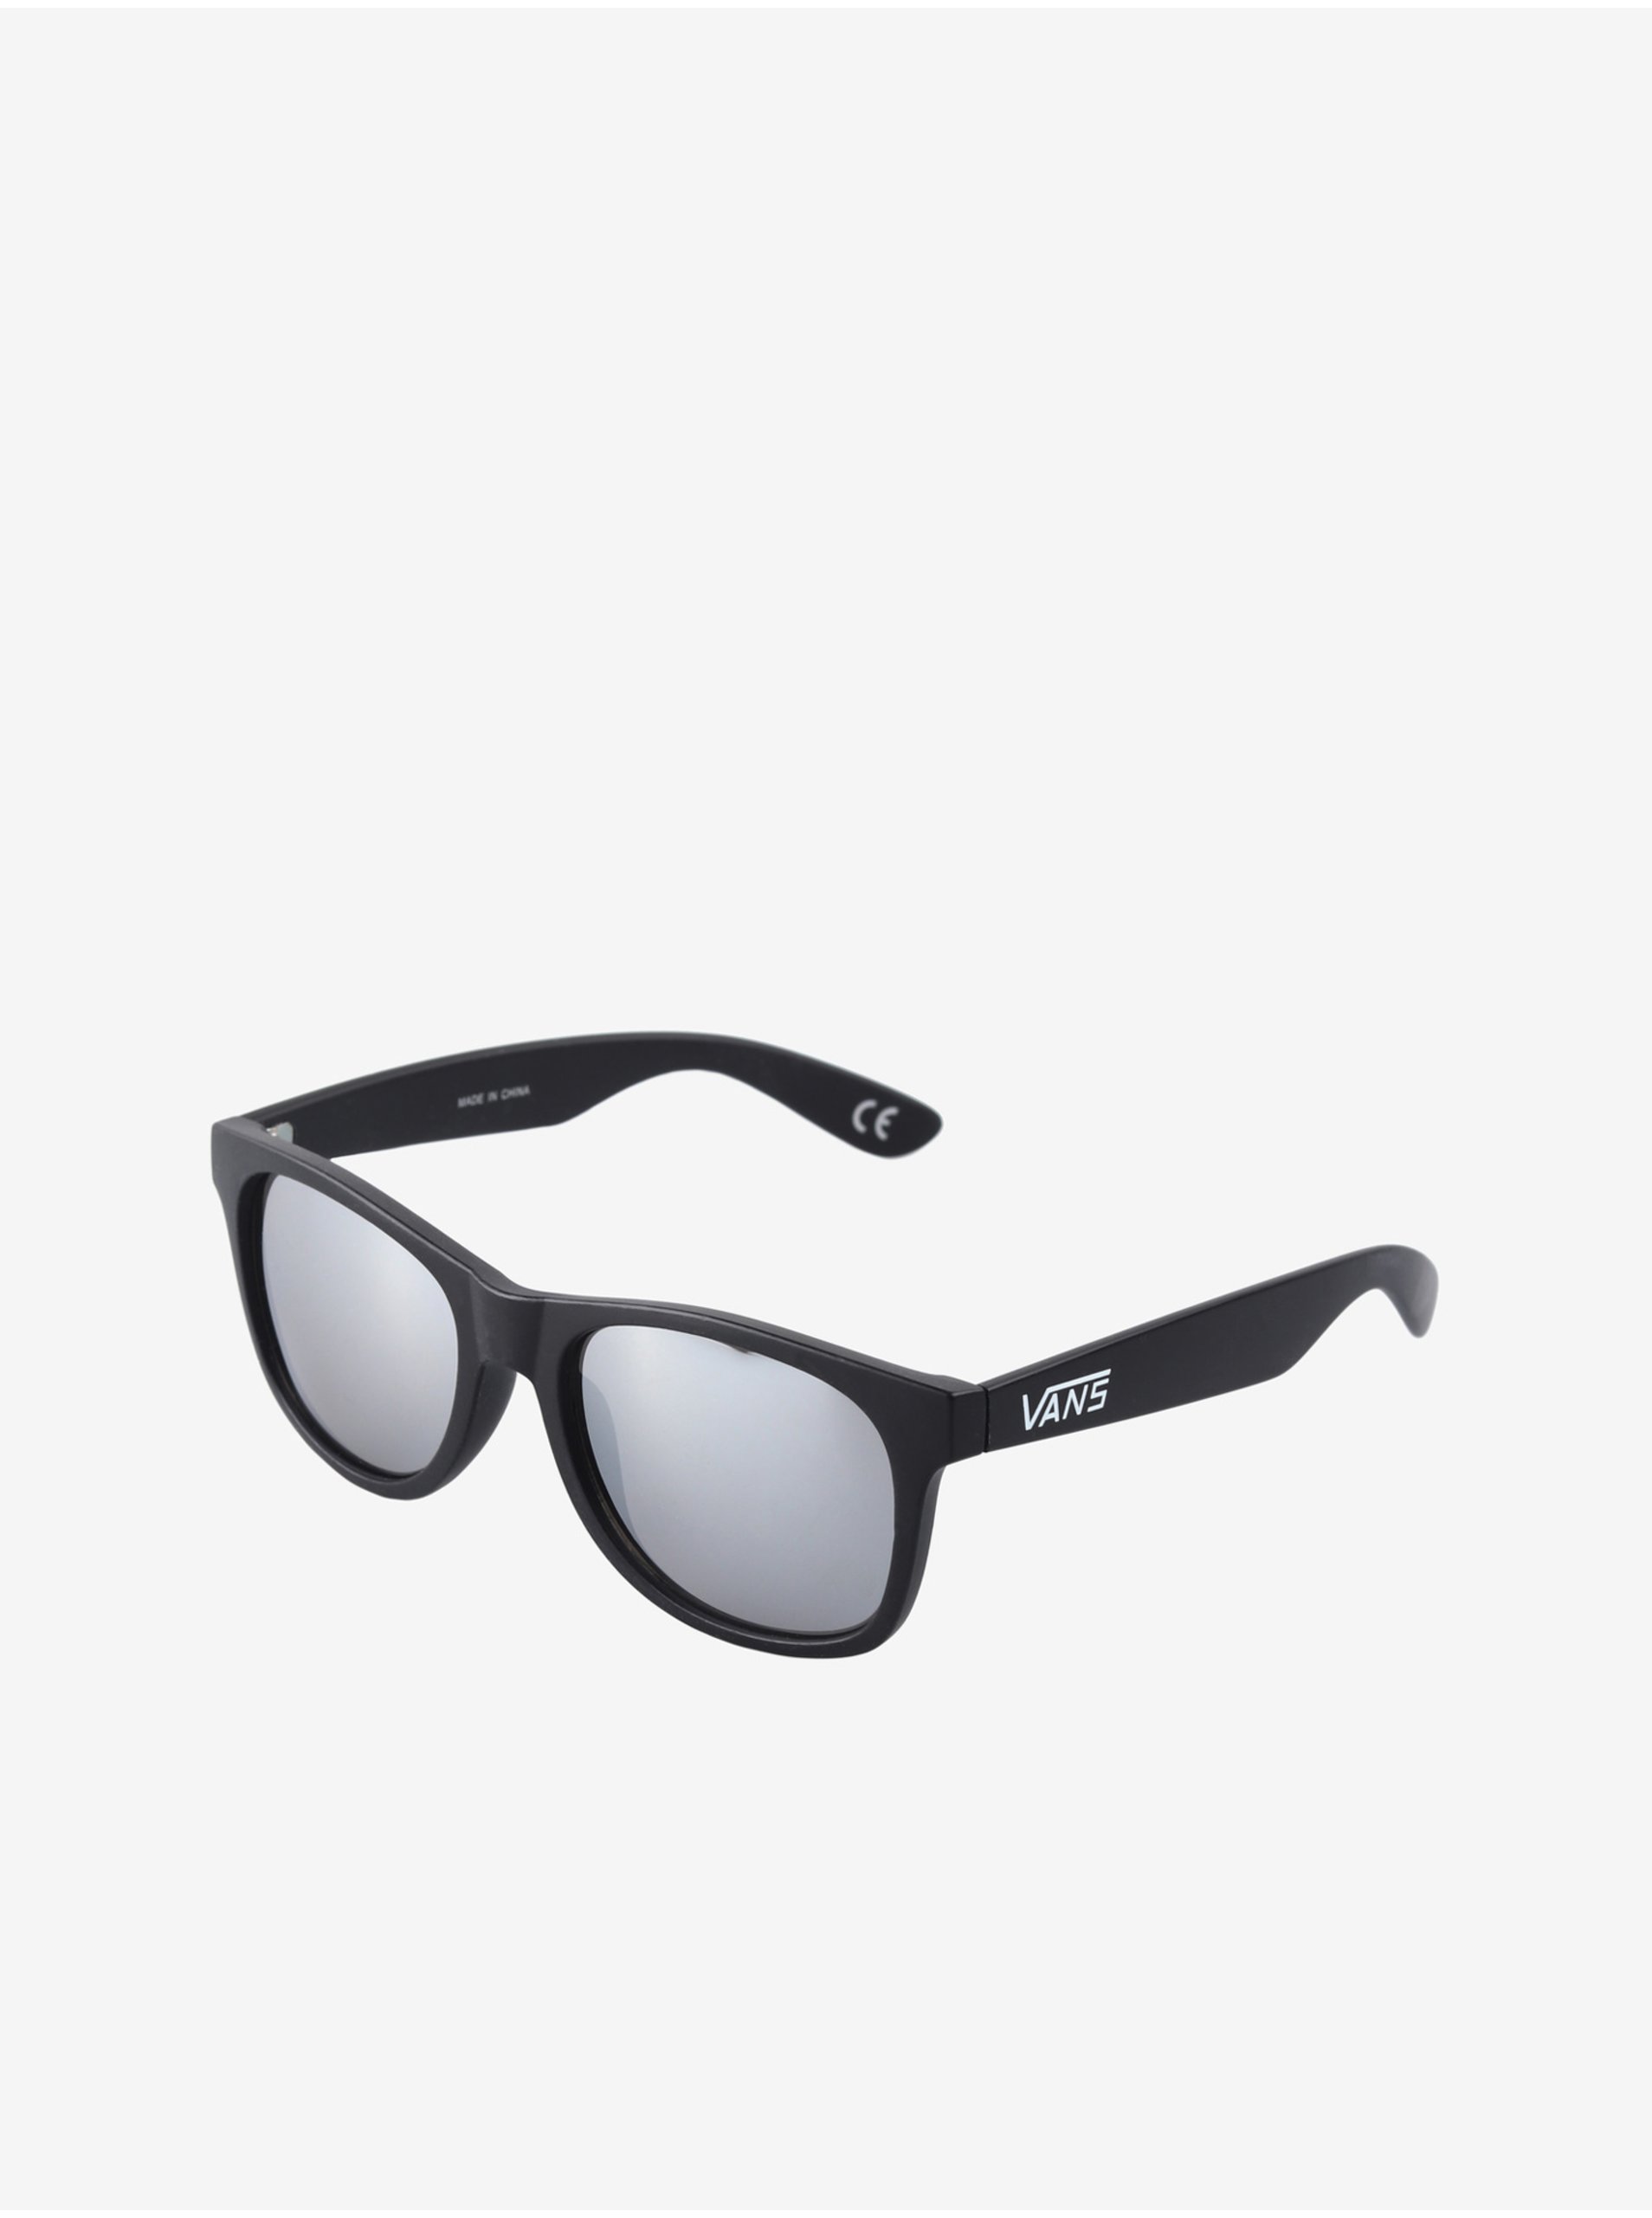 E-shop Čierne pánske slnečné okuliare Vans Spicoli 4